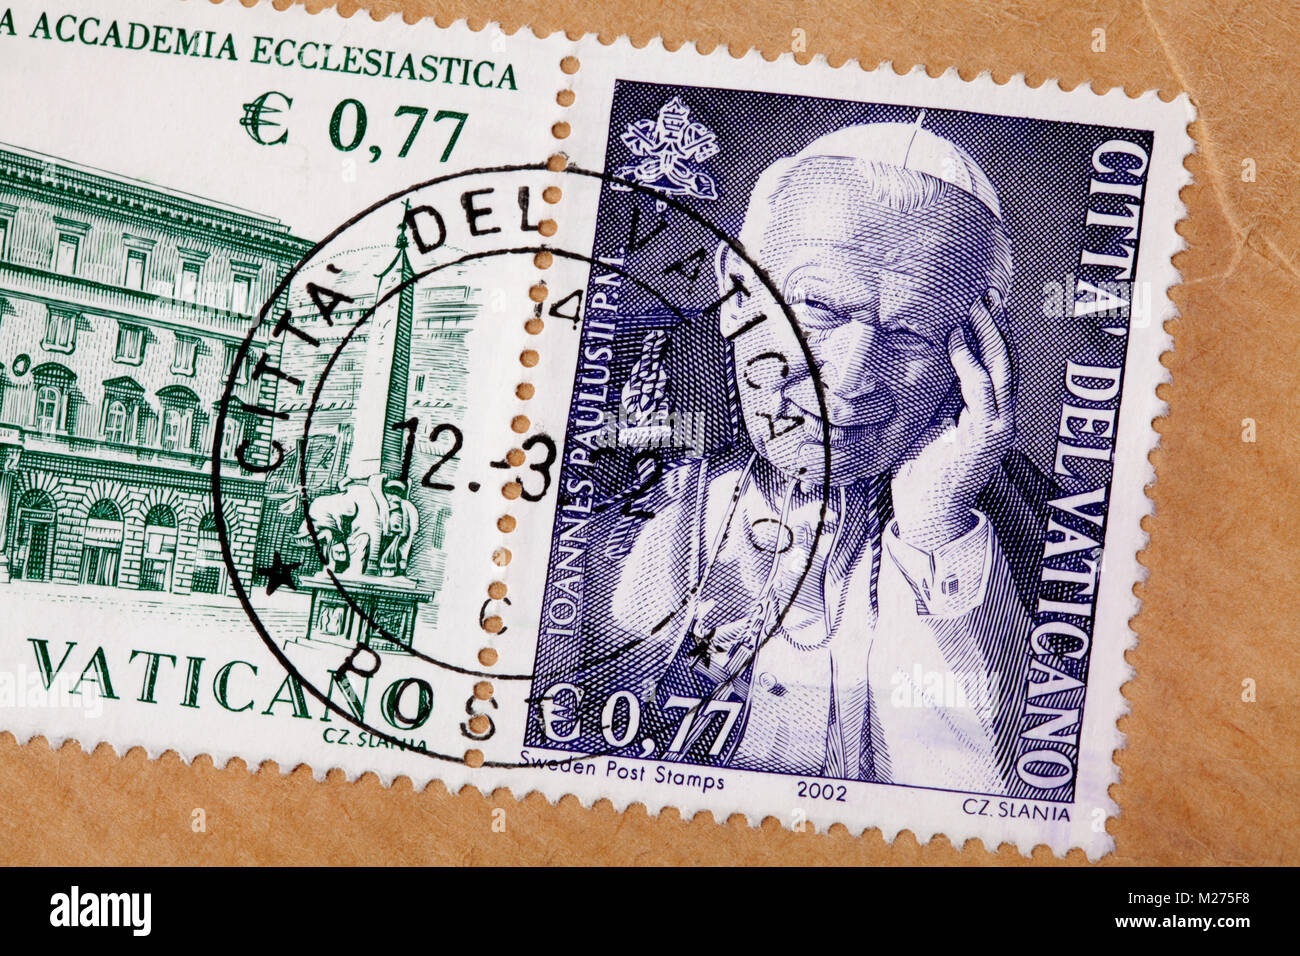 Briefmarken aus dem Vatikan auf einem Brief, gestanzt, Vatikan, Italien, Europa, gestempelte Briefmarken aus dem Vatikan, Johannes Paul II. (Karol Józef Wojtyla) Stockfoto